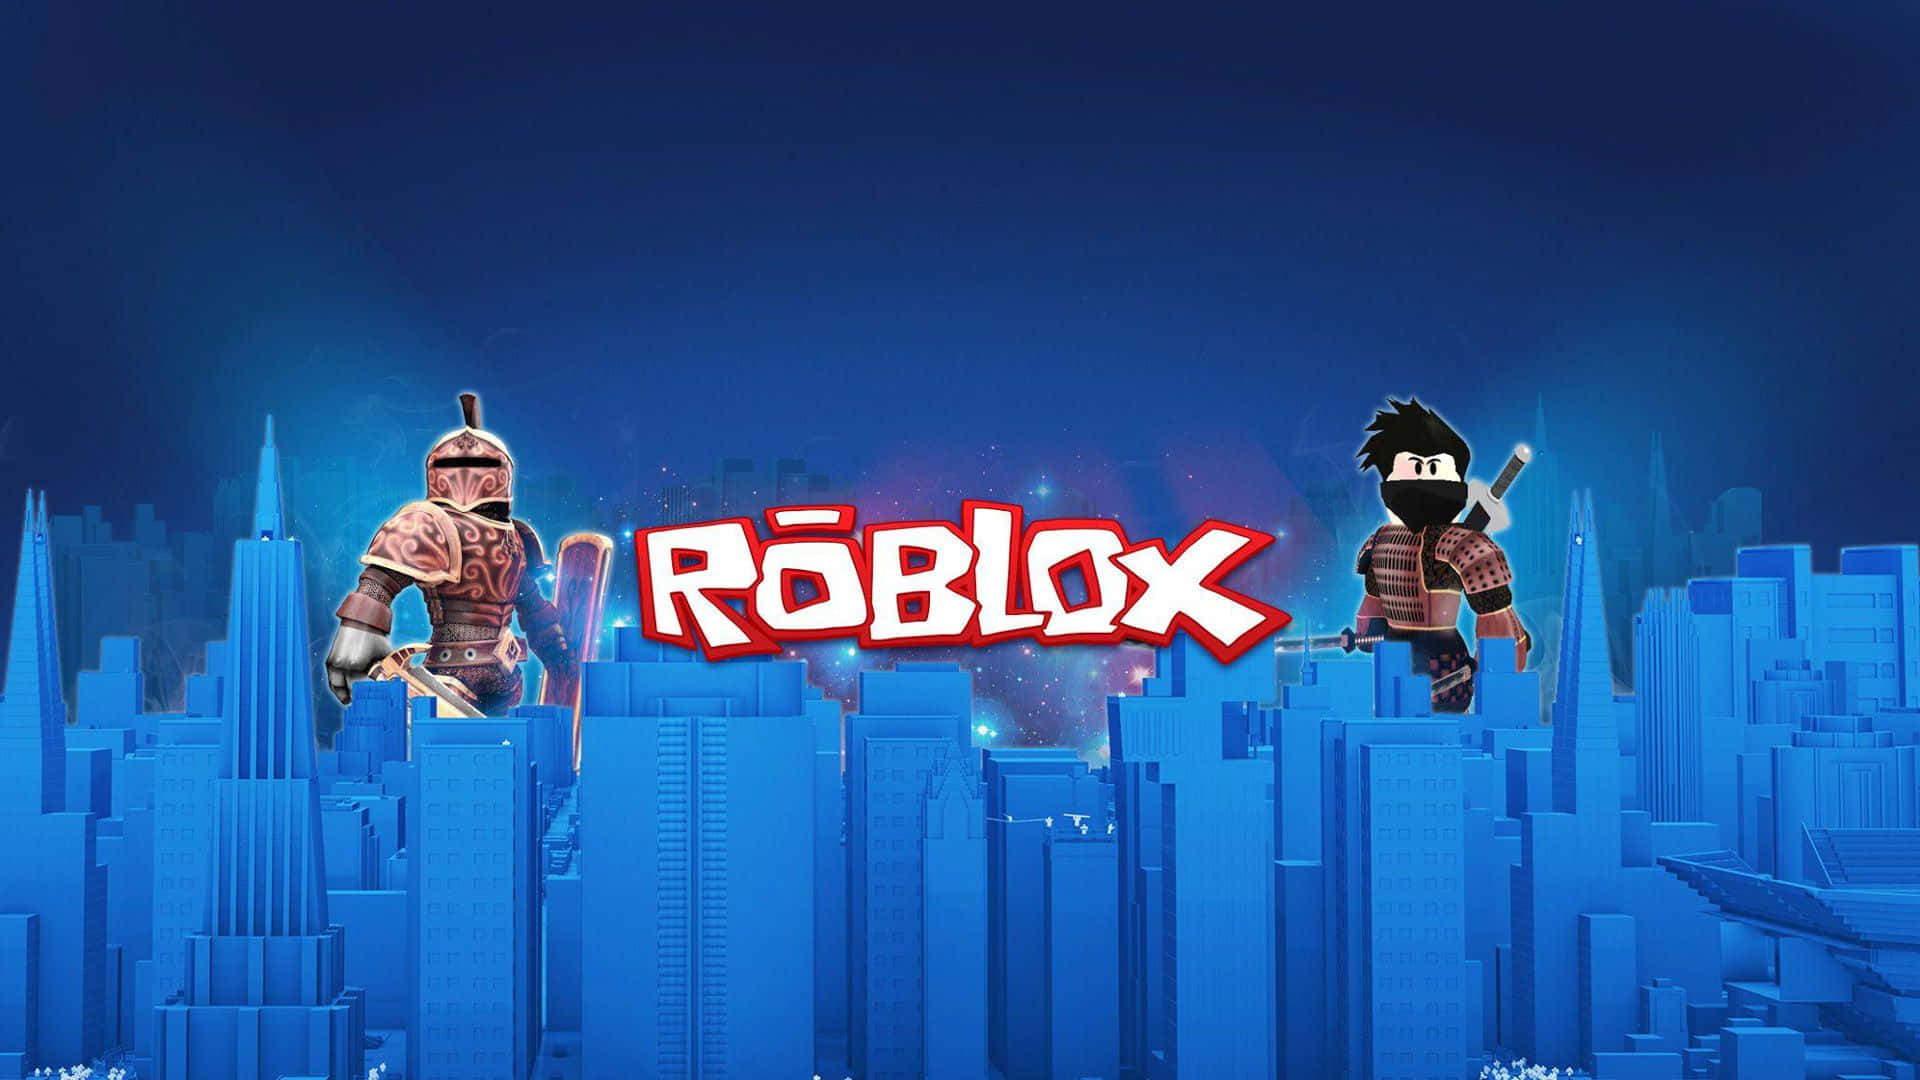 Robloxroblox - Roblox - Roblox - Roblox - Roblox - Rob Lox - Roblox - Roblox - Roblox - Roblox - Roblox - Roblox - Rob Sfondo